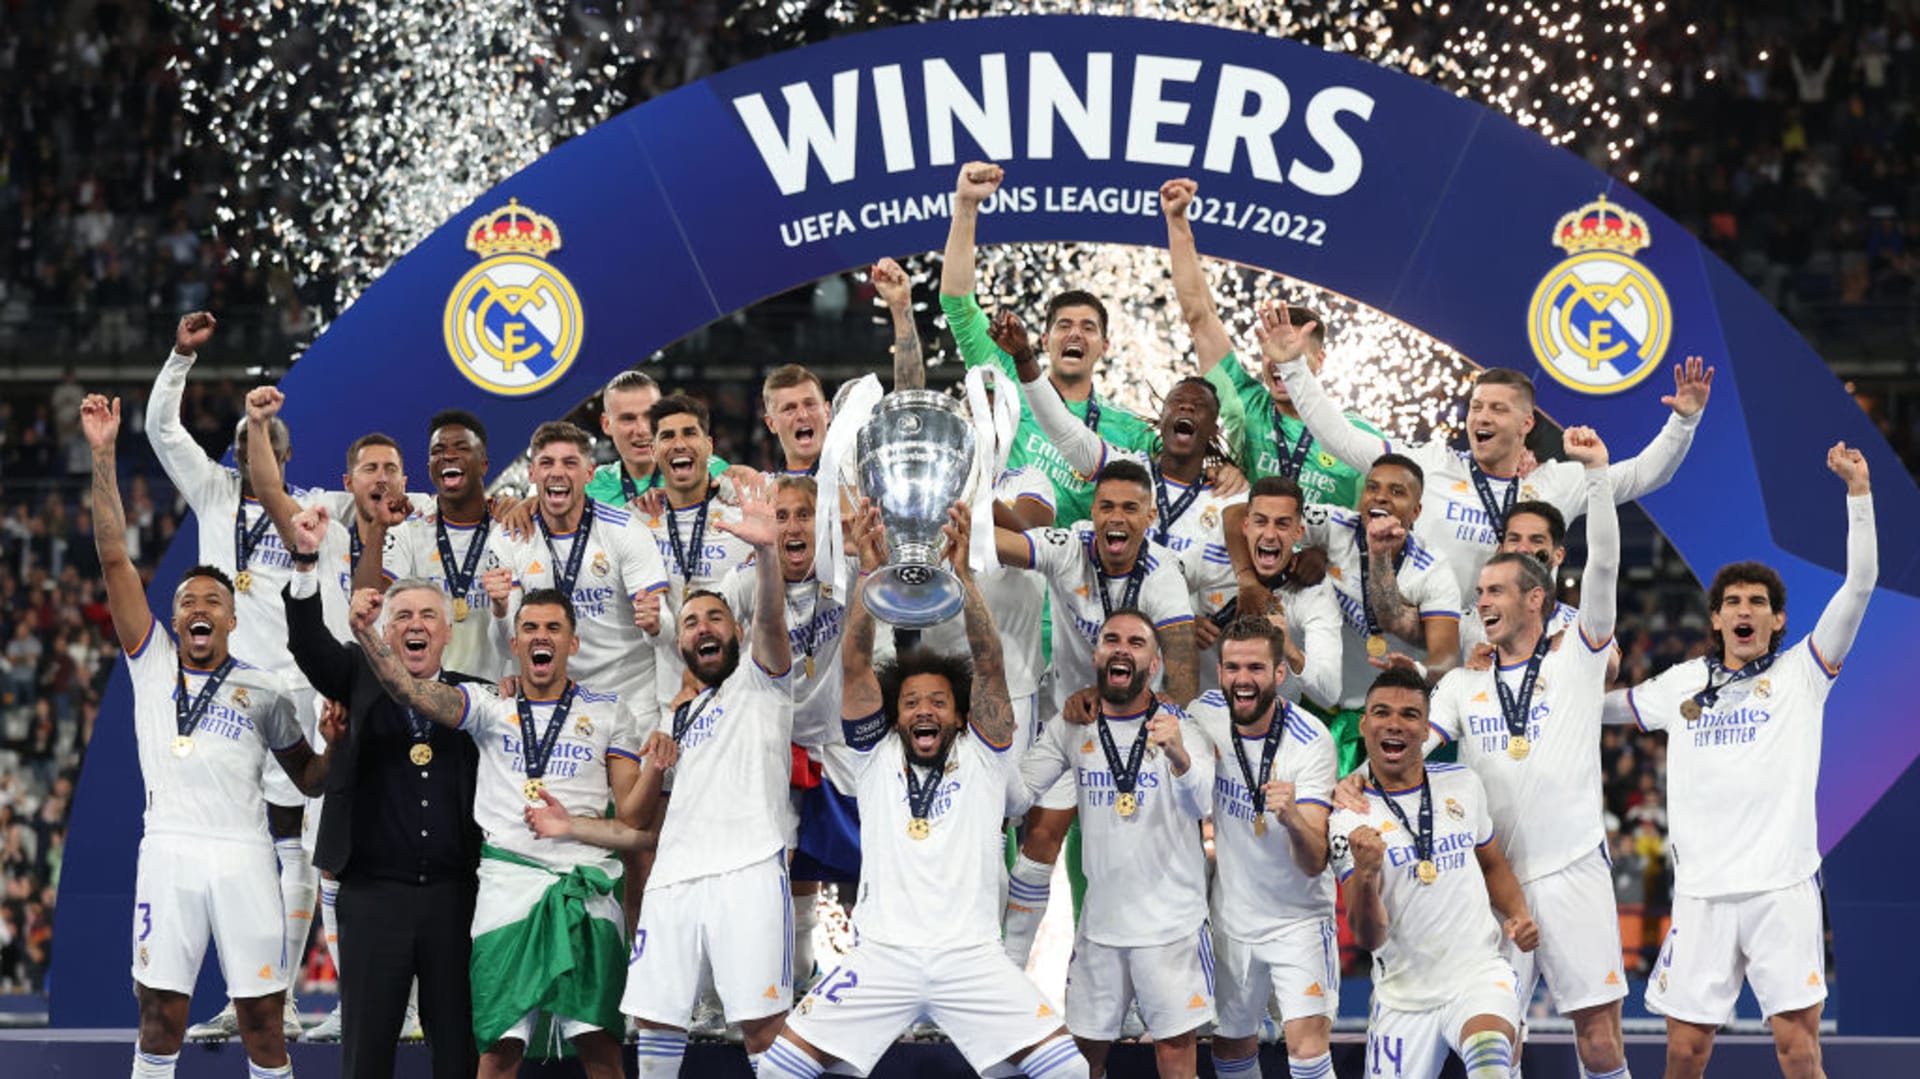 2022–23 UEFA Champions League - Wikipedia